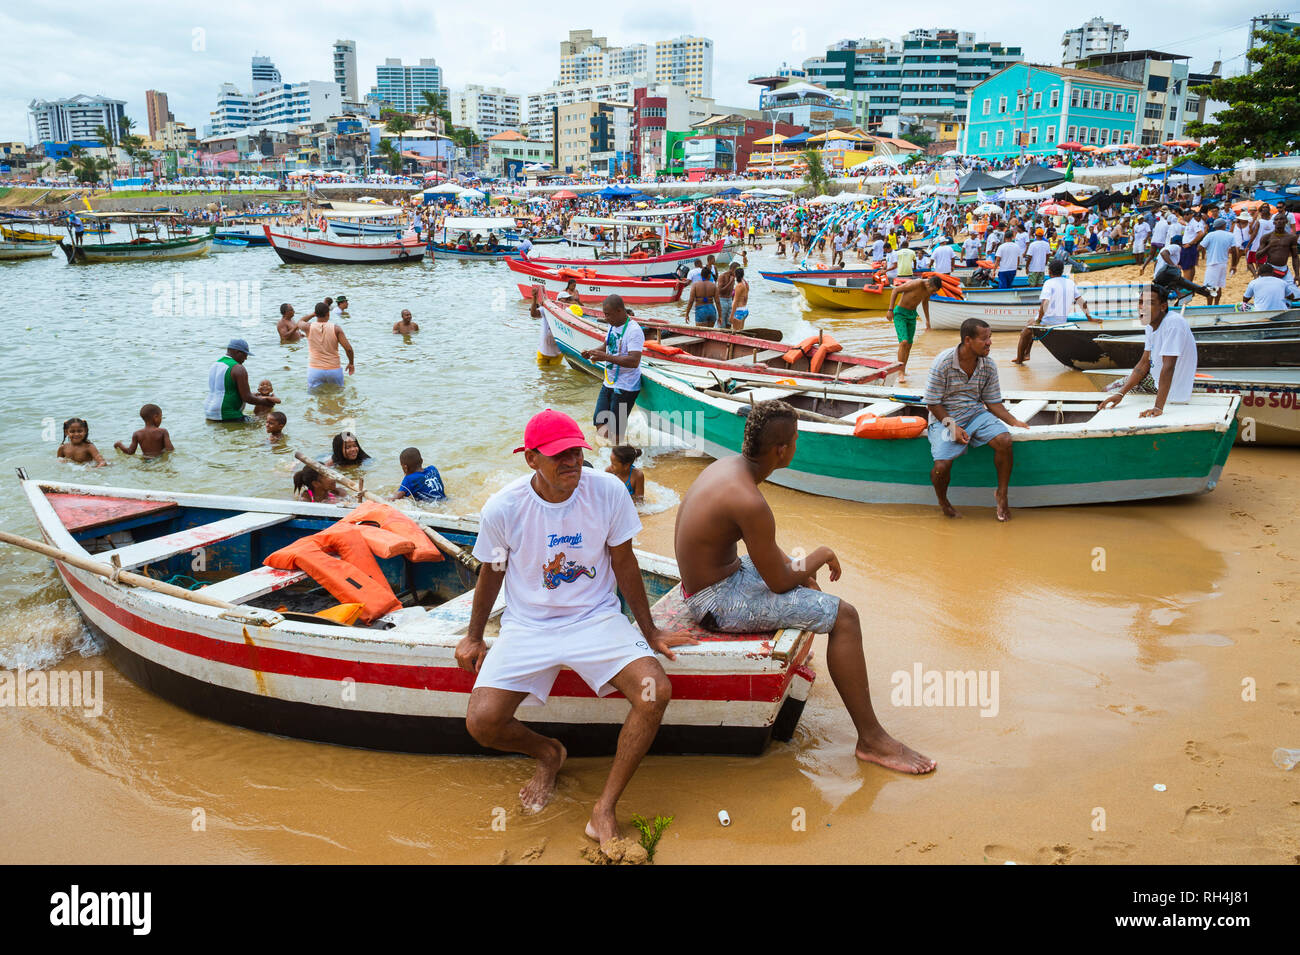 SALVADOR, Brasilien - Februar 02, 2016: Fischer im Dorf Rio Vermelho ihren Fischerbooten bieten zu Feiernden auf dem Festival von yemanja. Stockfoto